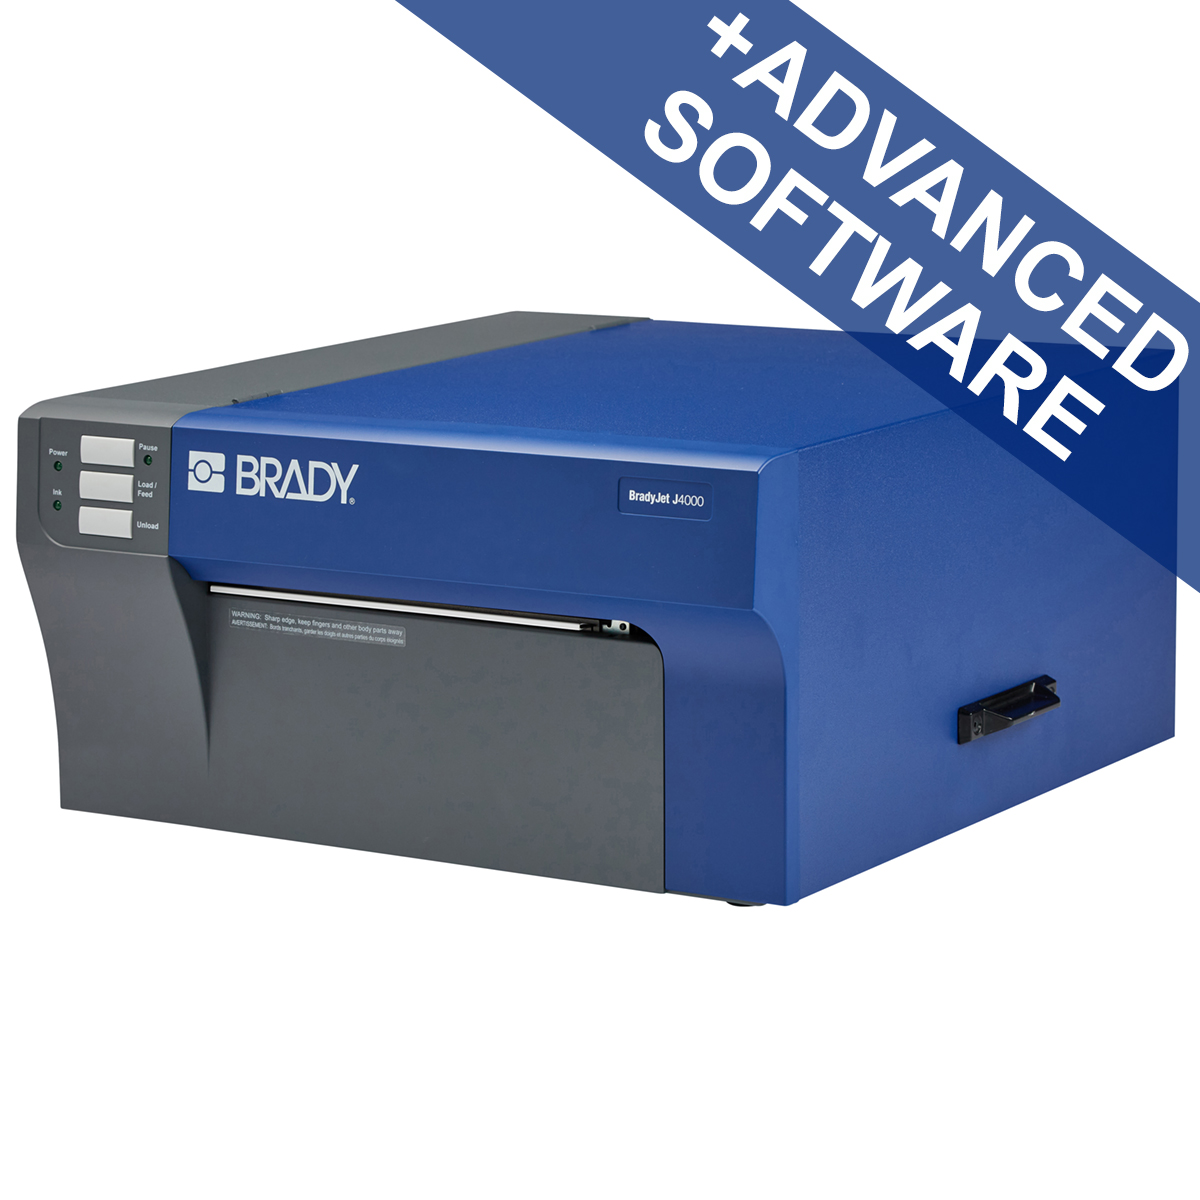 BradyJet J4000 Kleurenlabelprinter met software voor veiligheids en siteidentificatie